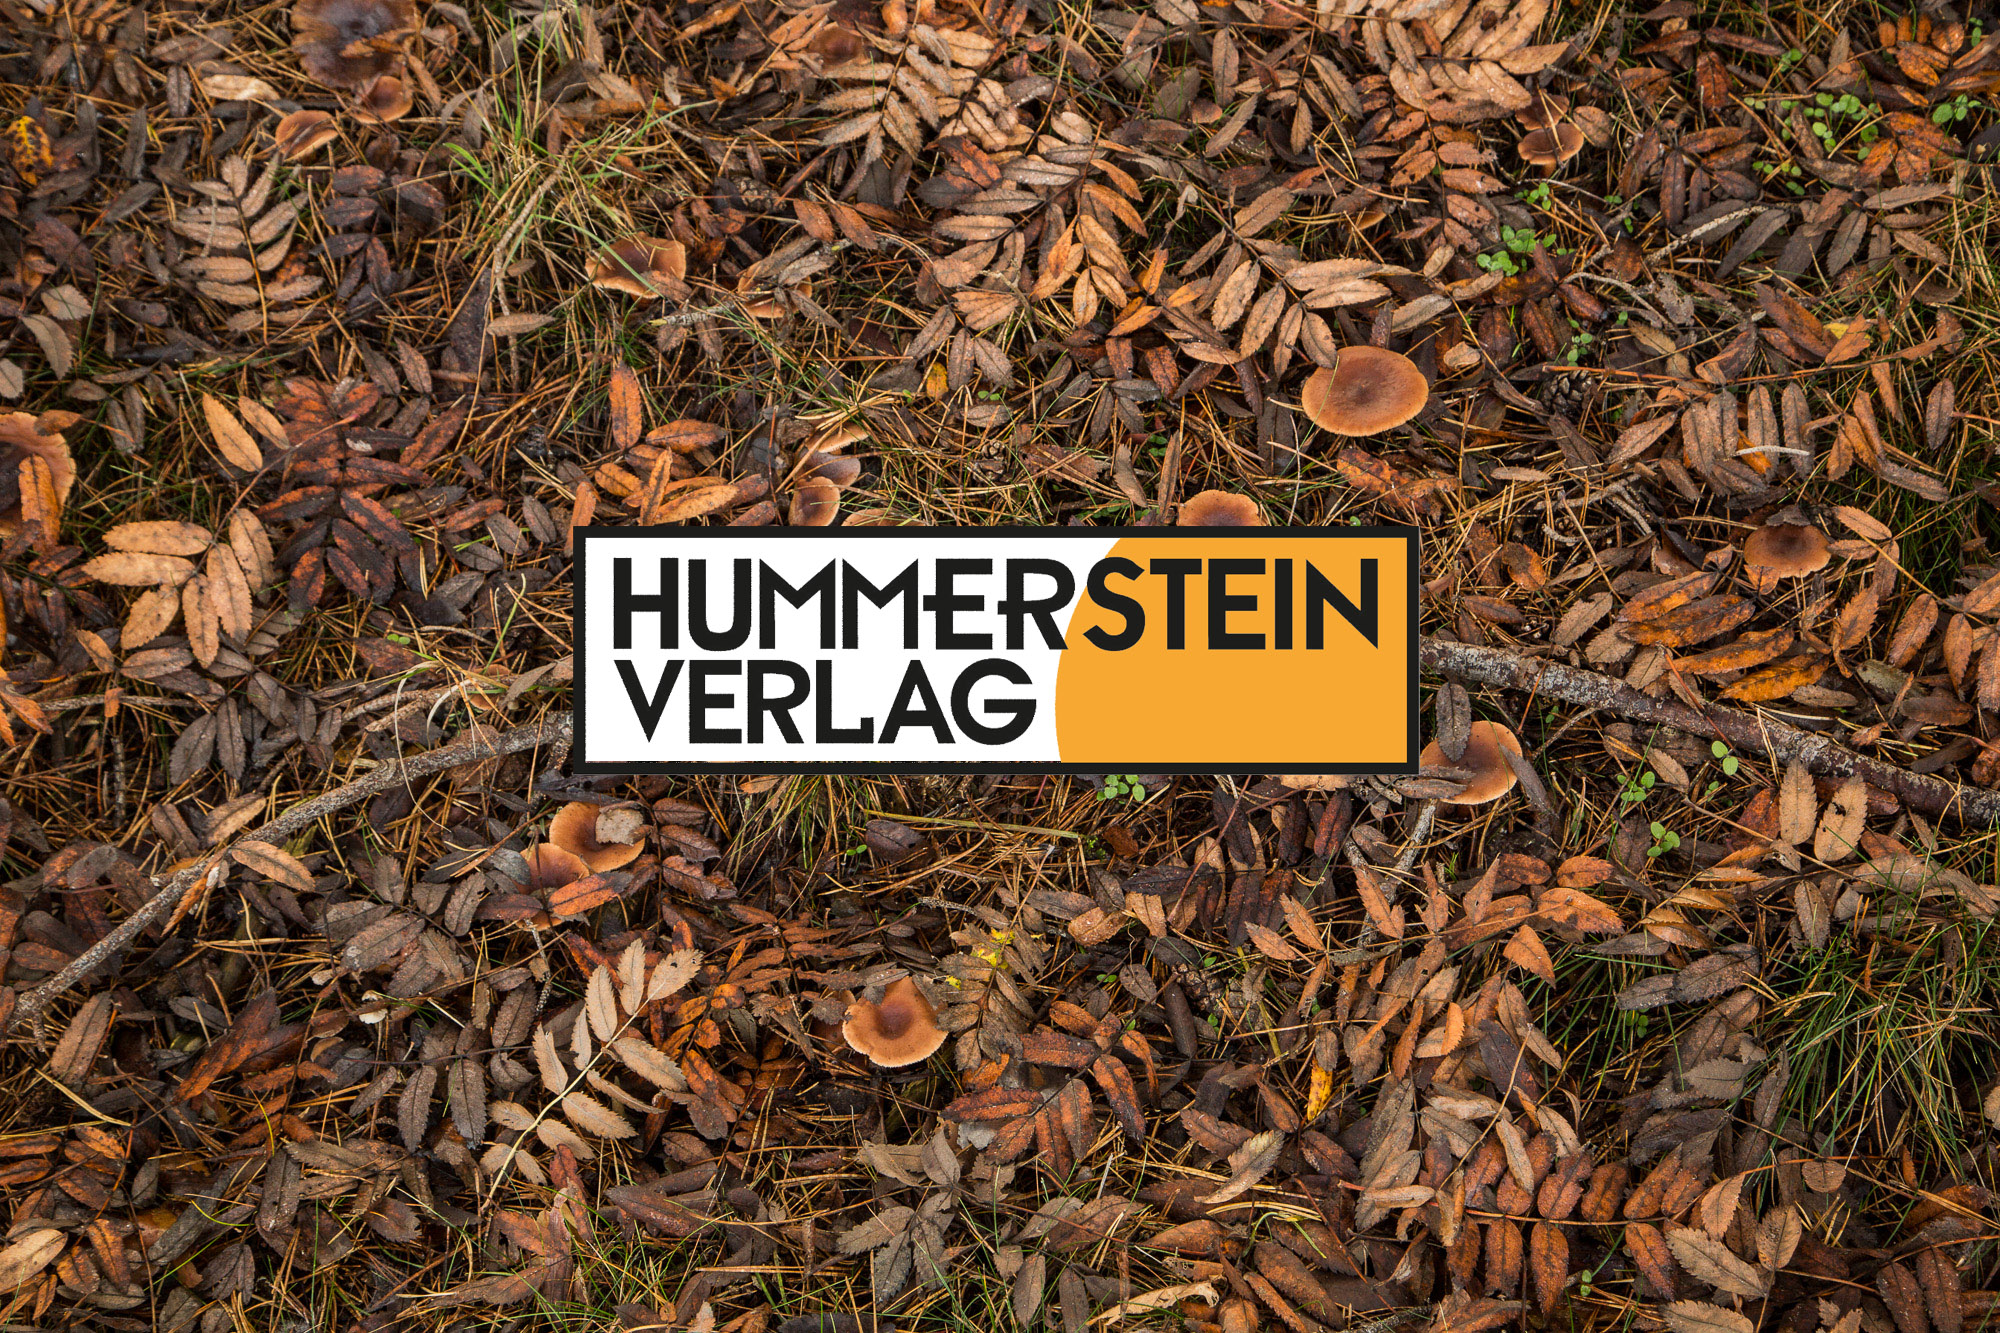 (c) Hummerstein-verlag.de